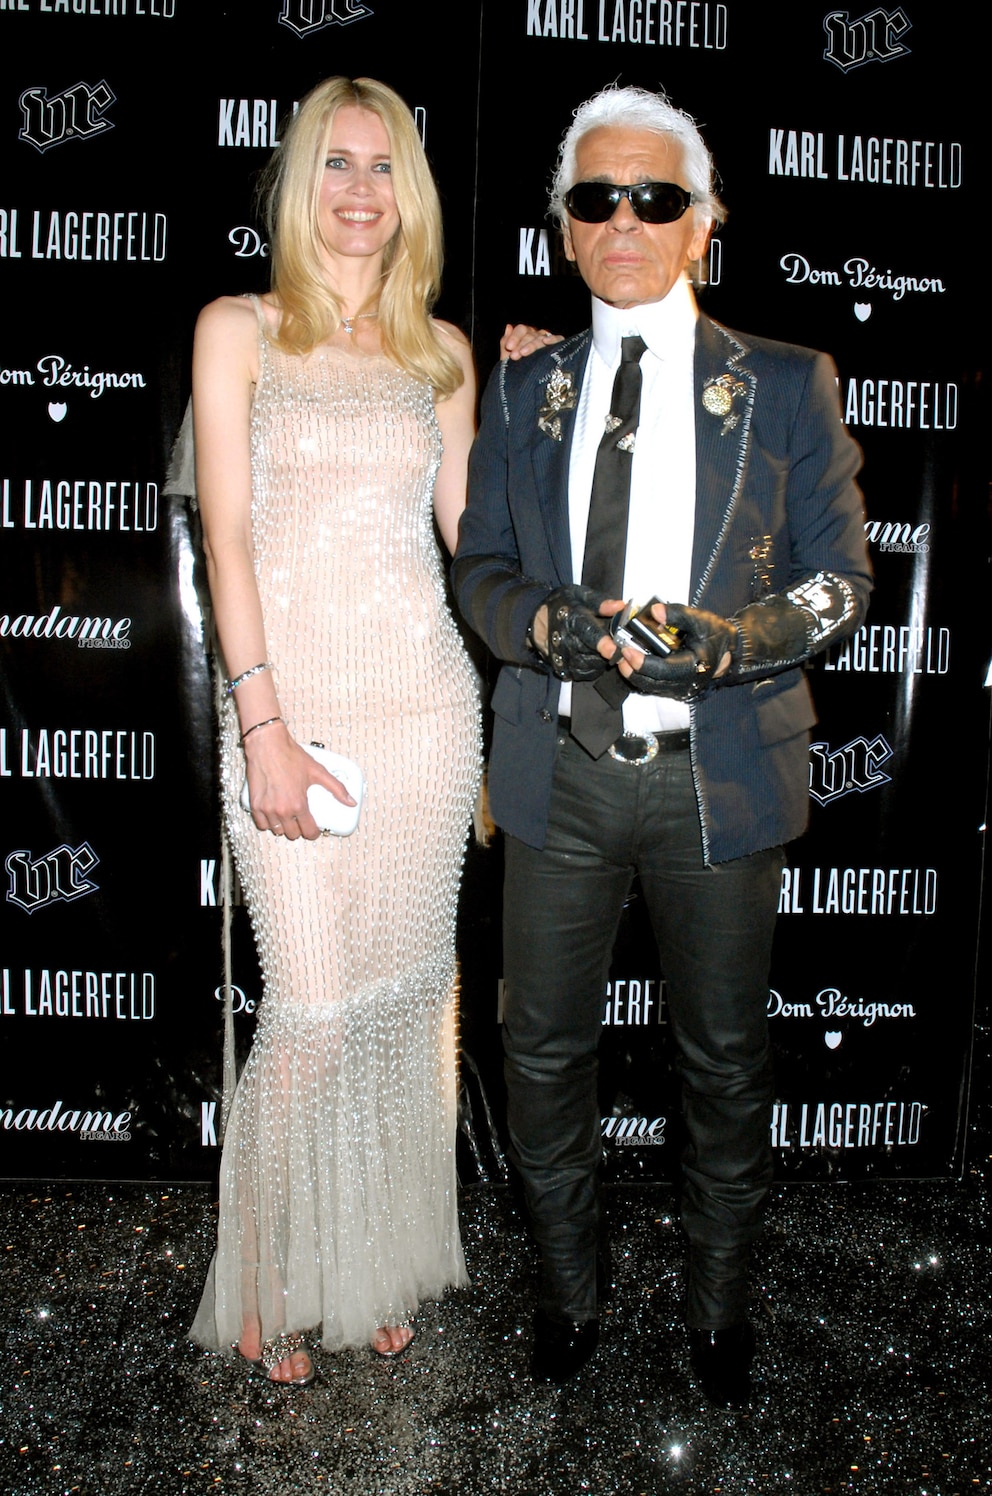 Karl Lagerfeld und Claudia Schiffer gemeinsam in Cannes